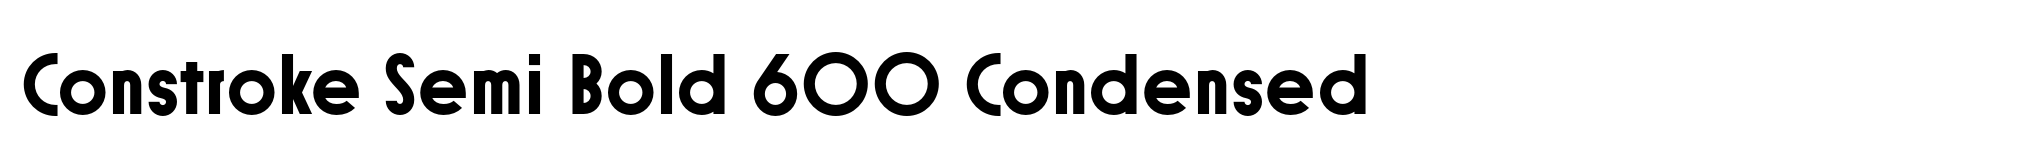 Constroke Semi Bold 600 Condensed image